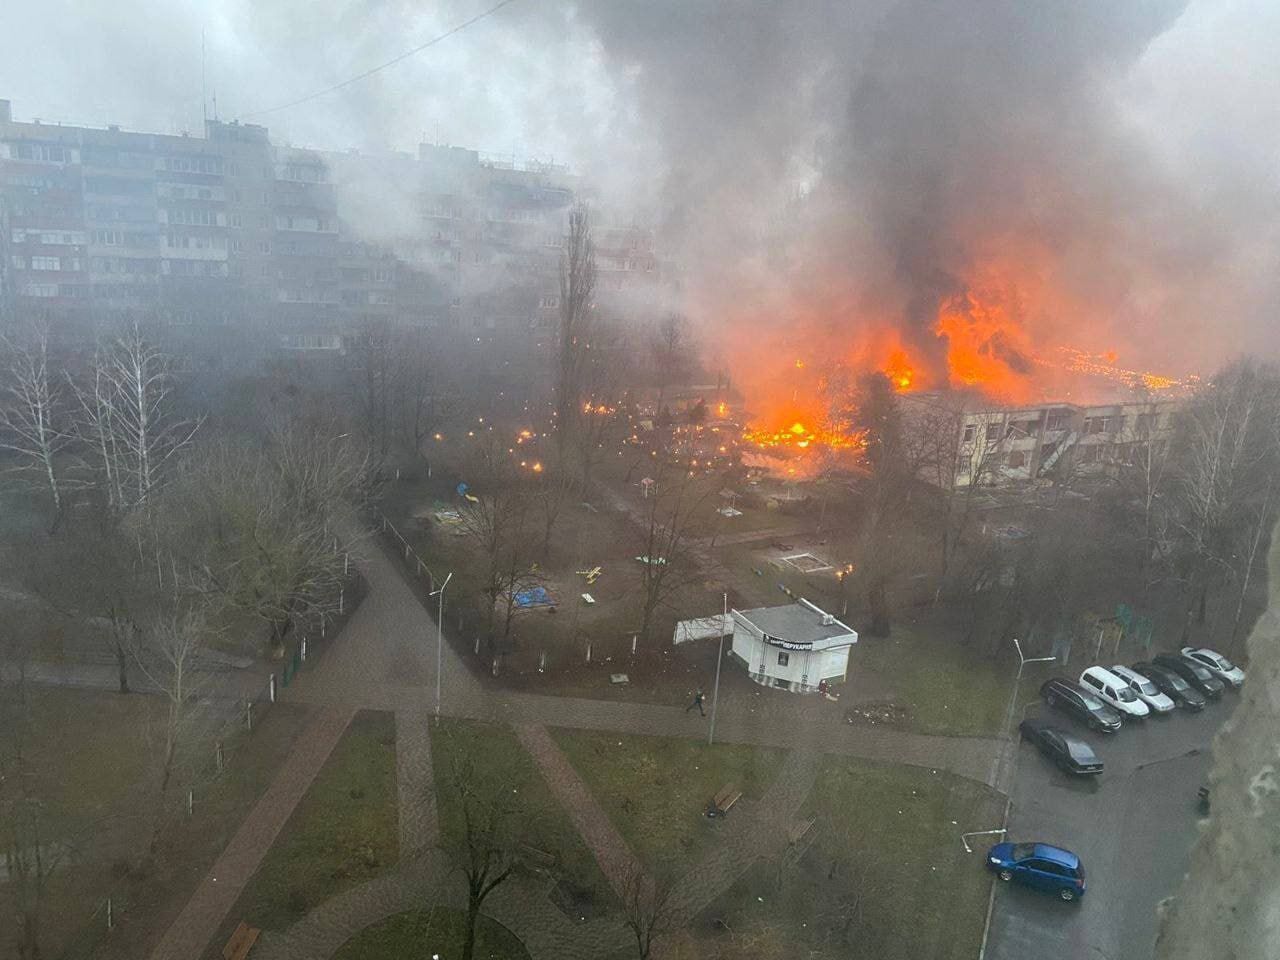 "Вертолет начал резко снижаться": житель Броваров рассказал о последних минутах перед авиакатастрофой. Видео